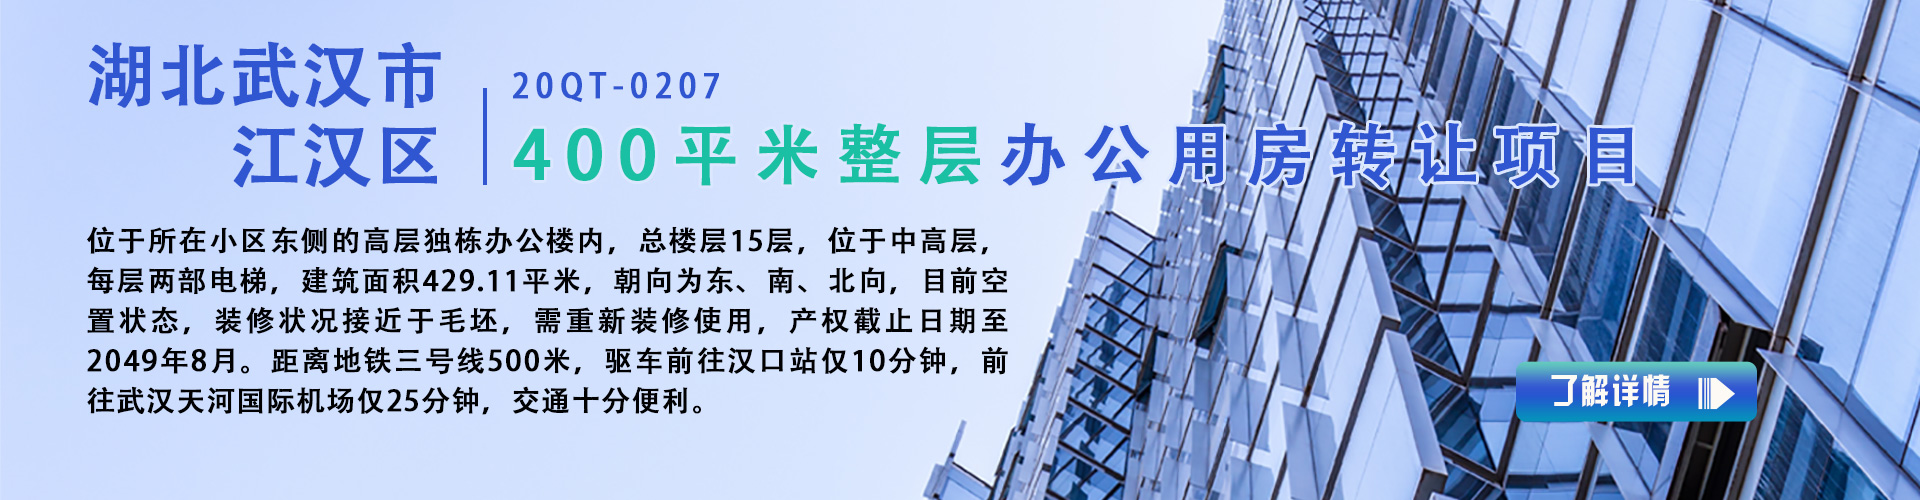 办公用房|湖北武汉市江汉区400平米整层办公用房转让项目20QT-0207